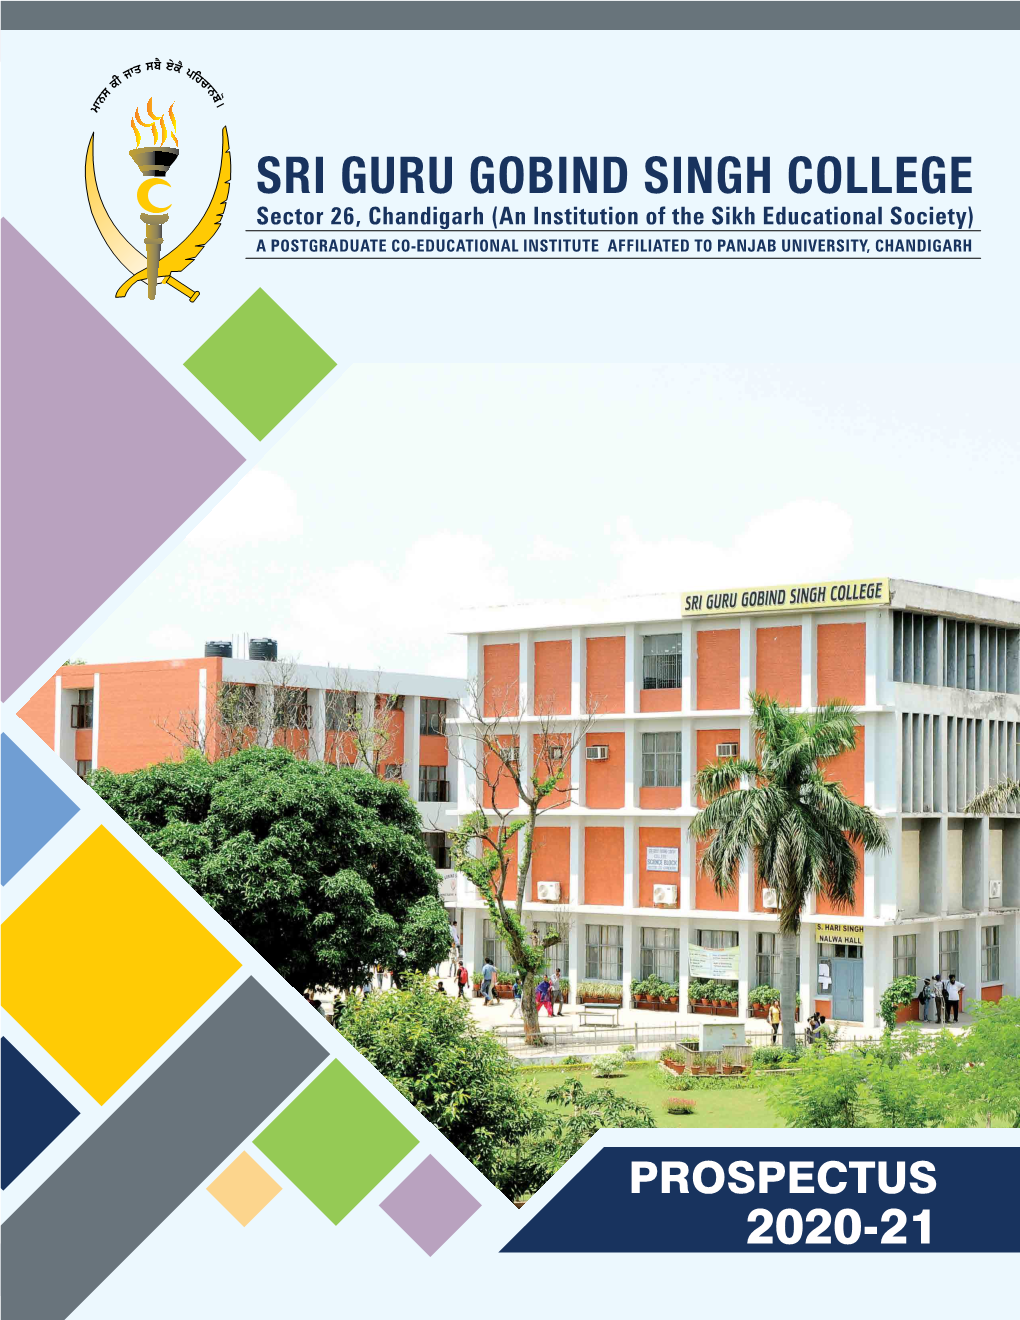 Prospectus 2020-21 Sri Guru Gobind Singh College